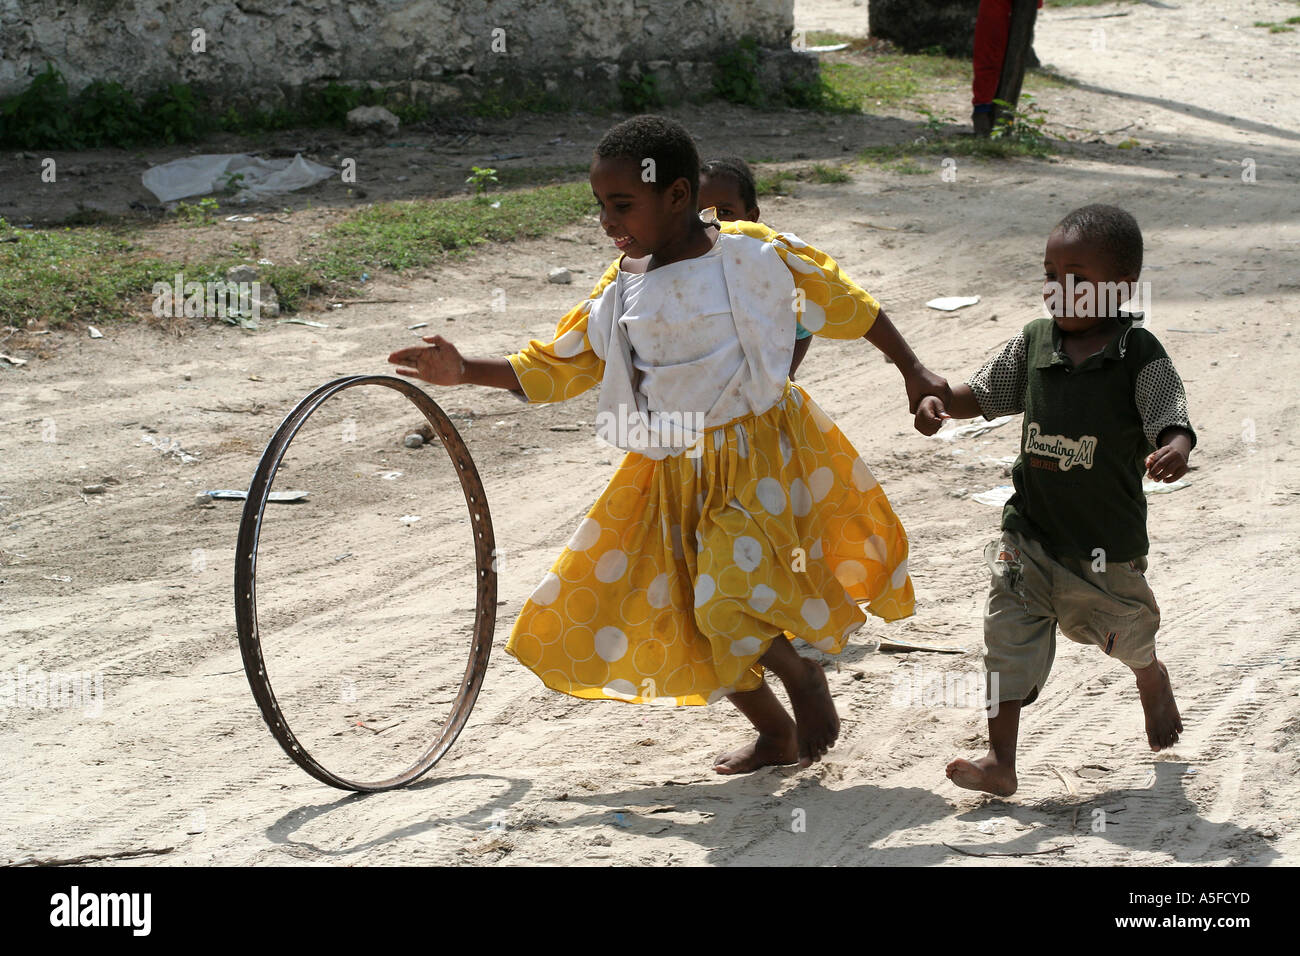 Children spinning a hoop on a dirt road, Stonetown, Zanzibar, Tanzania Stock Photo